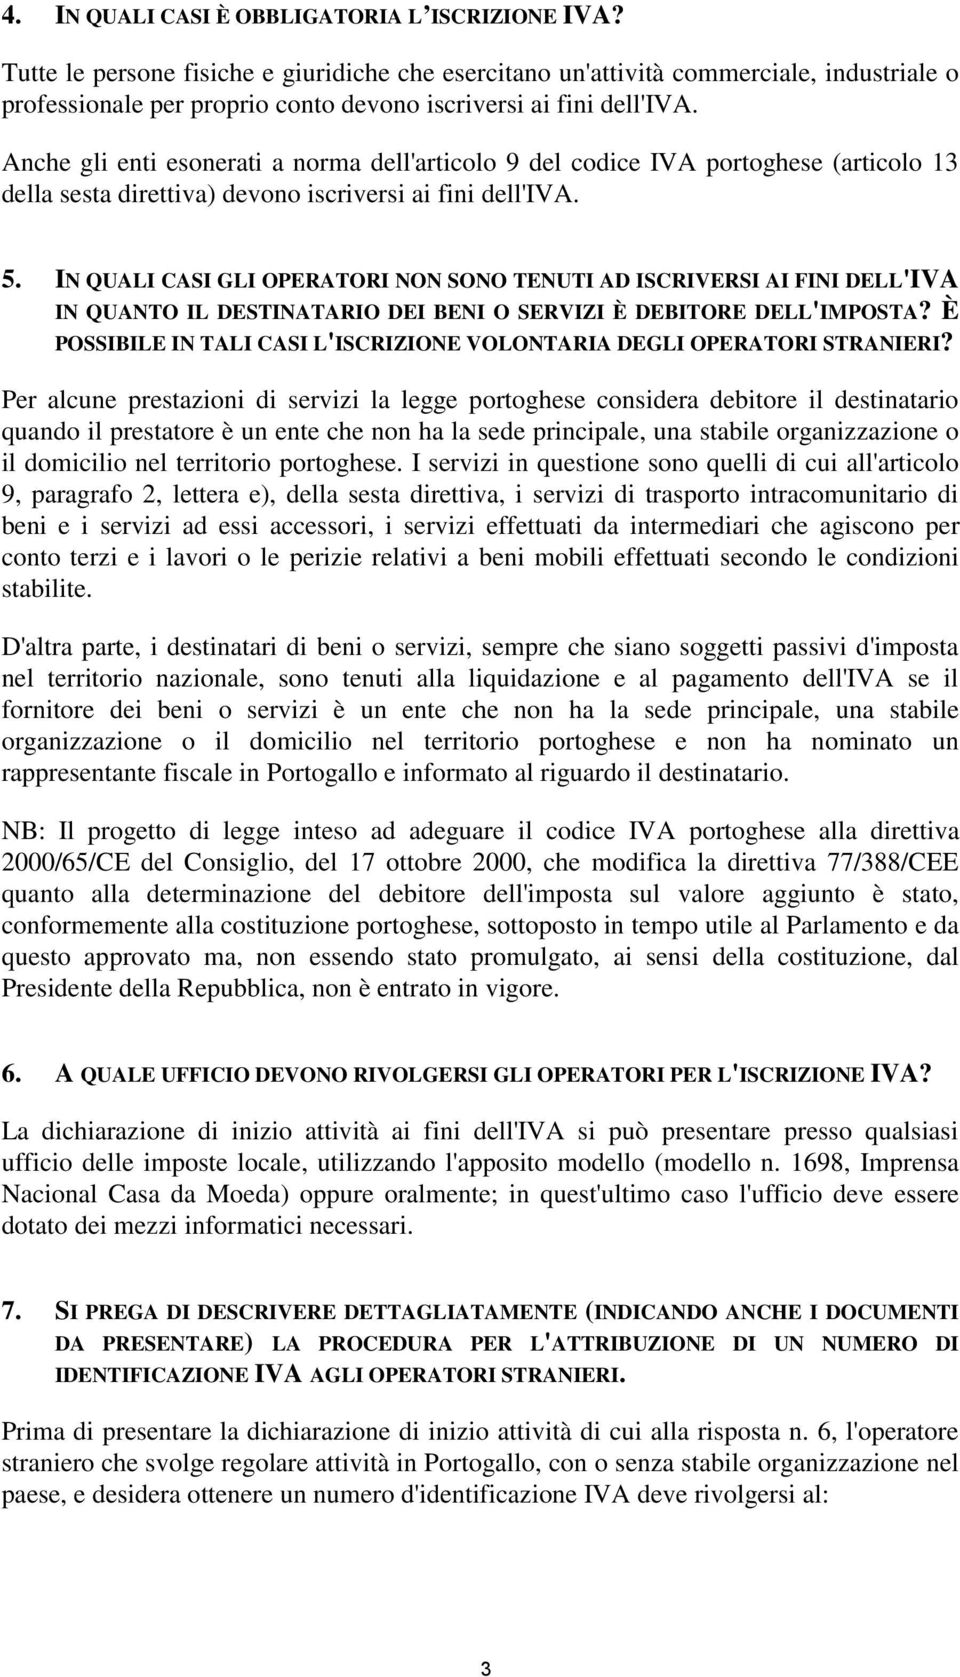 Anche gli enti esonerati a norma dell'articolo 9 del codice IVA portoghese (articolo 13 della sesta direttiva) devono iscriversi ai fini dell'iva. 5.